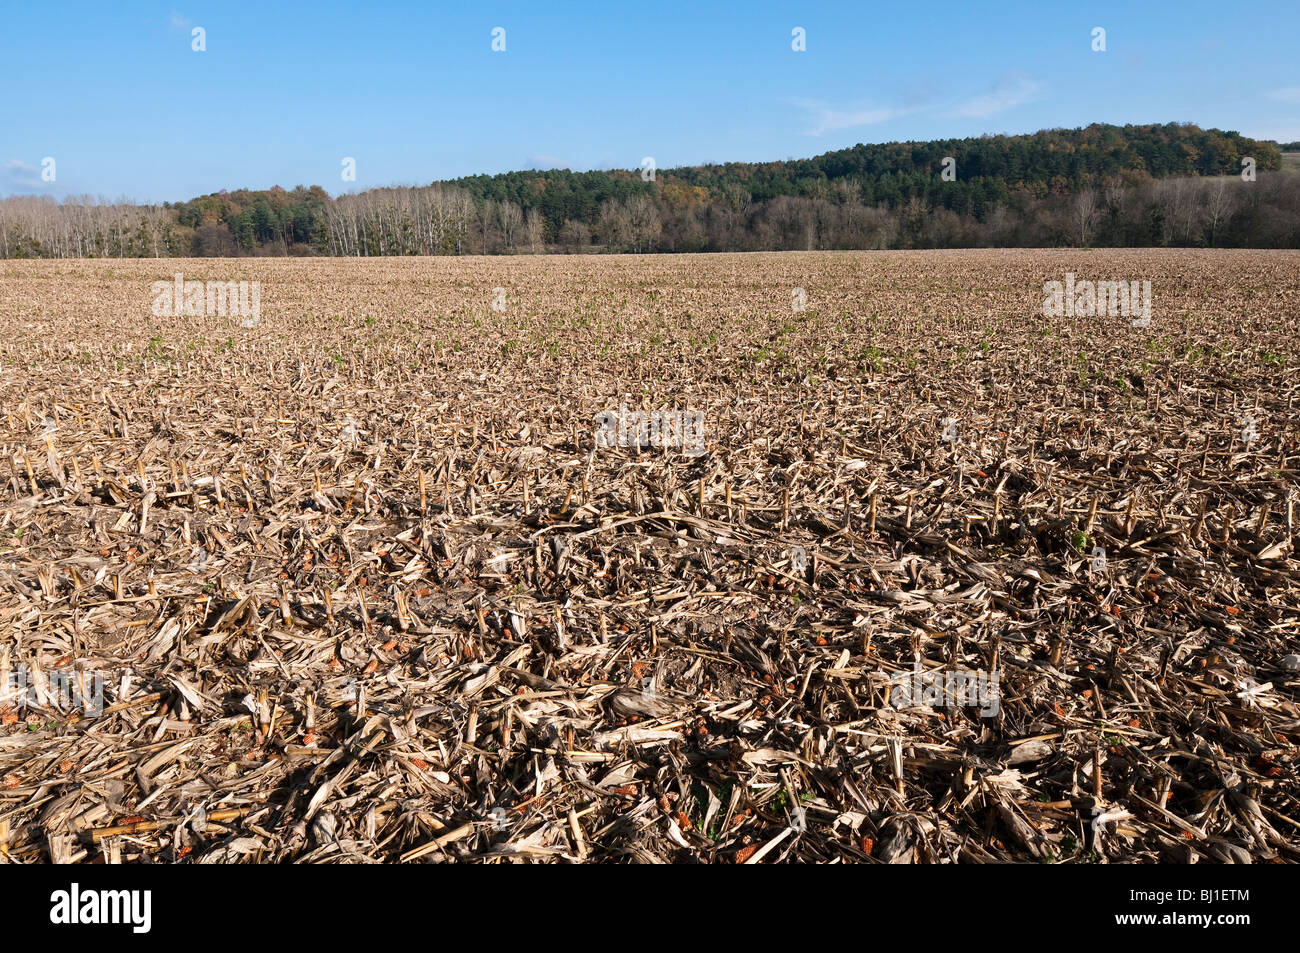 Ackerland Abfälle nach der Ernte Mais / süßer Mais - Indre-et-Loire, Frankreich. Stockfoto